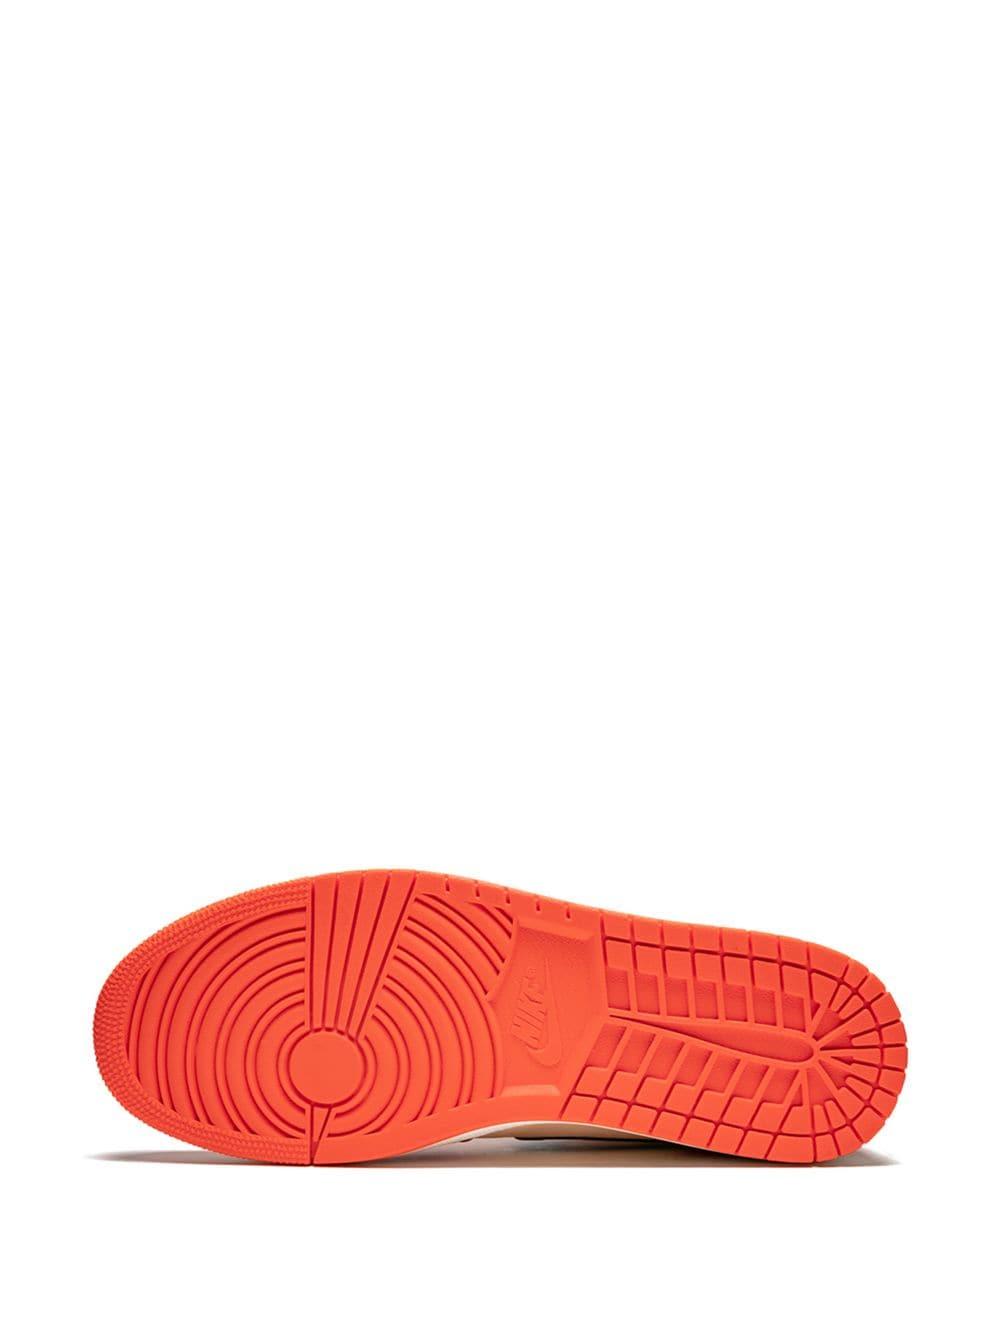 Lyst - Nike Air 1 Mid Se Sneakers in Orange for Men